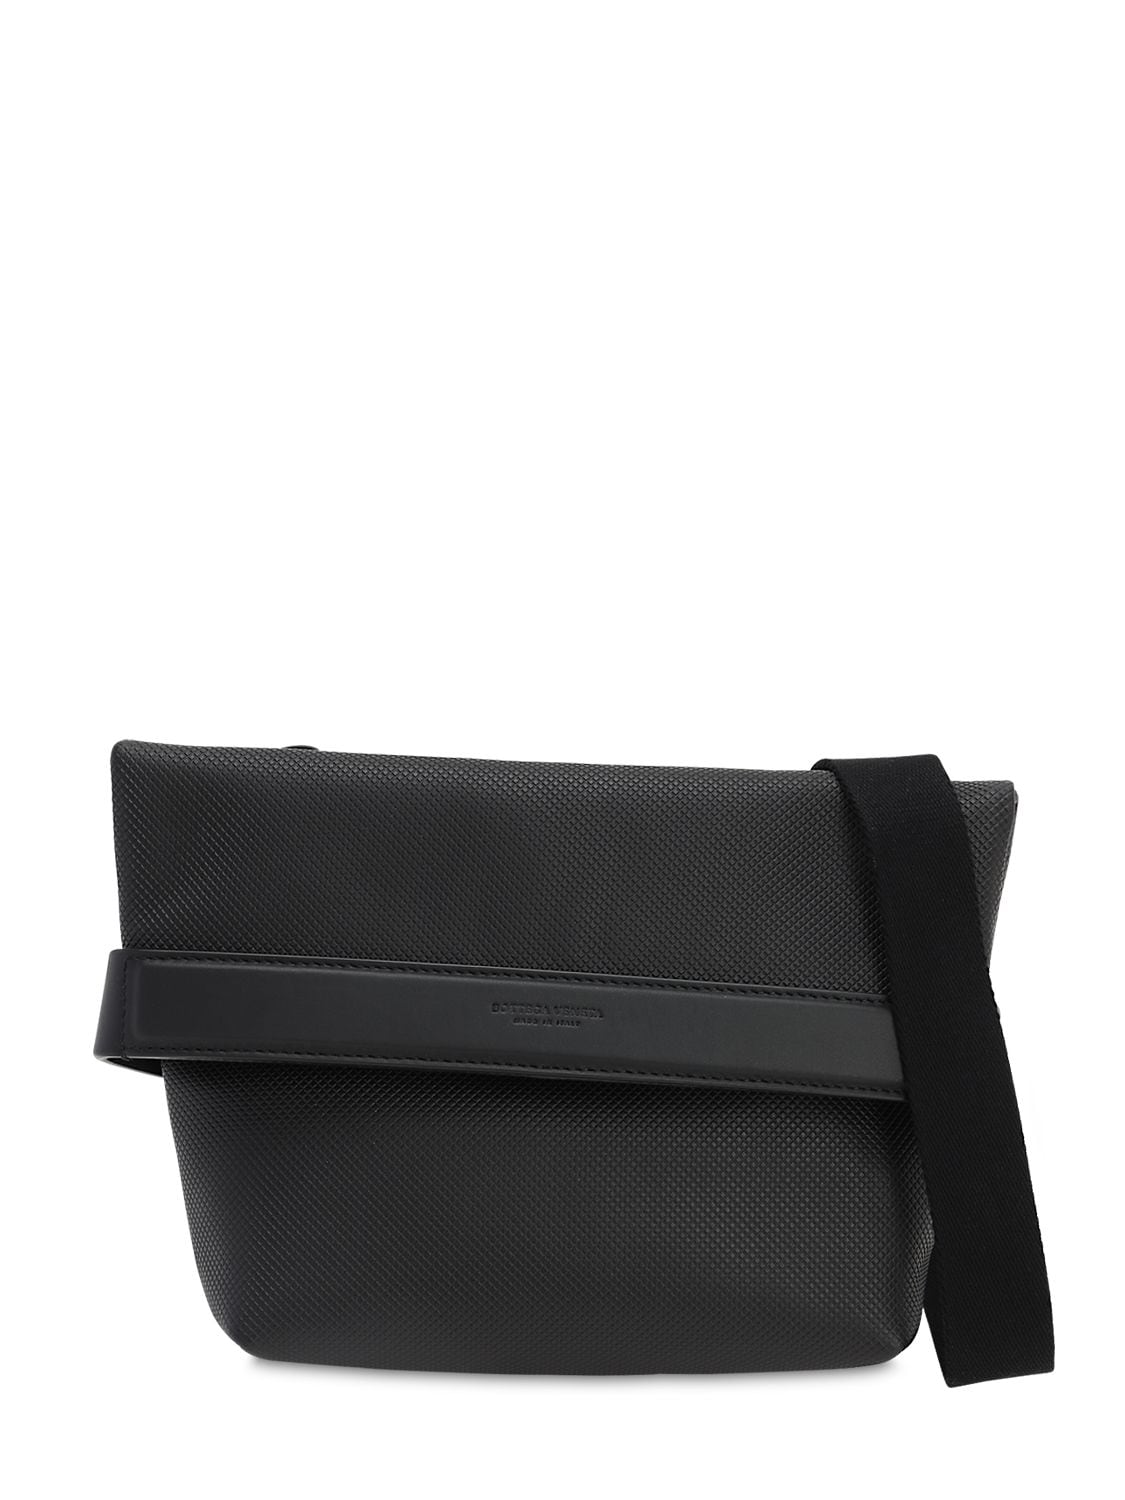 Bottega Veneta Marco Polo Leather Crossbody Bag In Black